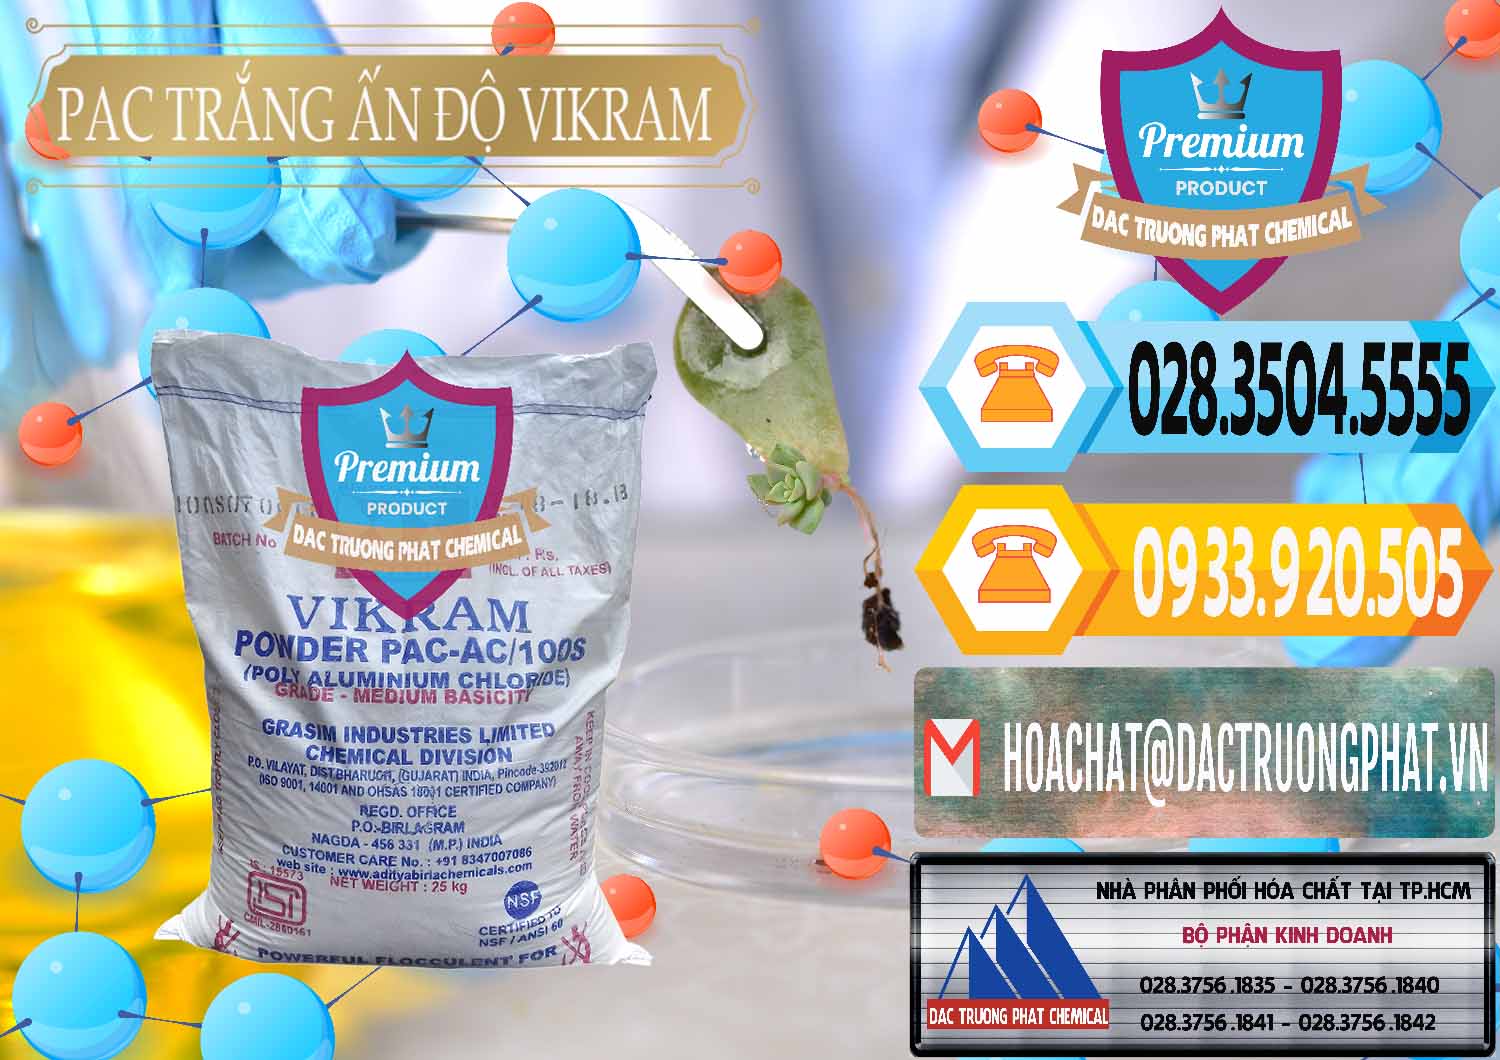 Công ty bán & cung ứng PAC - Polyaluminium Chloride Ấn Độ India Vikram - 0120 - Công ty chuyên phân phối & cung ứng hóa chất tại TP.HCM - hoachattayrua.net